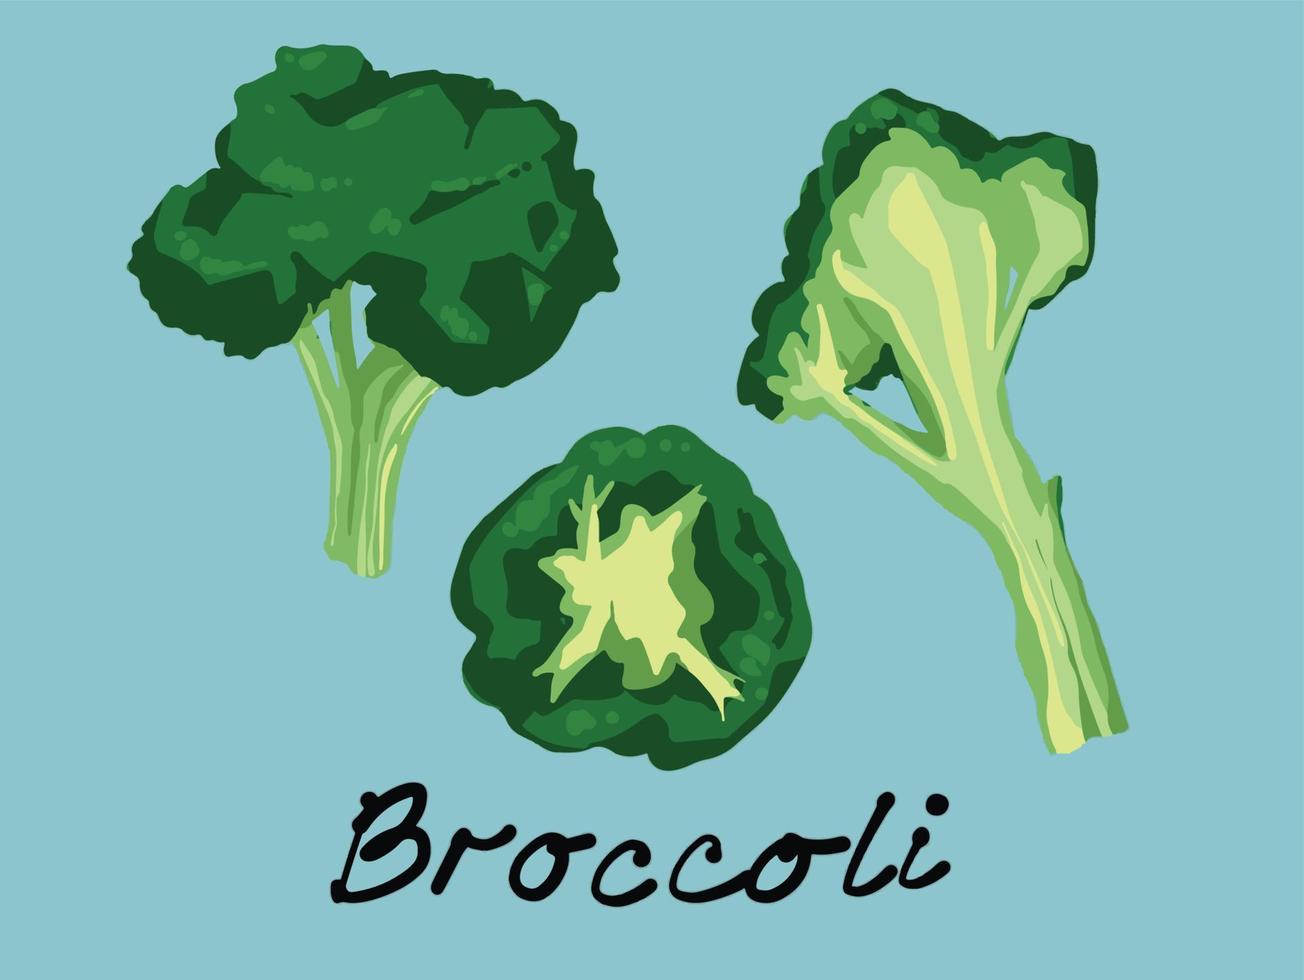 légumes verts de brocoli bio dans une collection de jeux de formes et d'angles variés. illustration vectorielle d'aliments végétaliens sains. vecteur